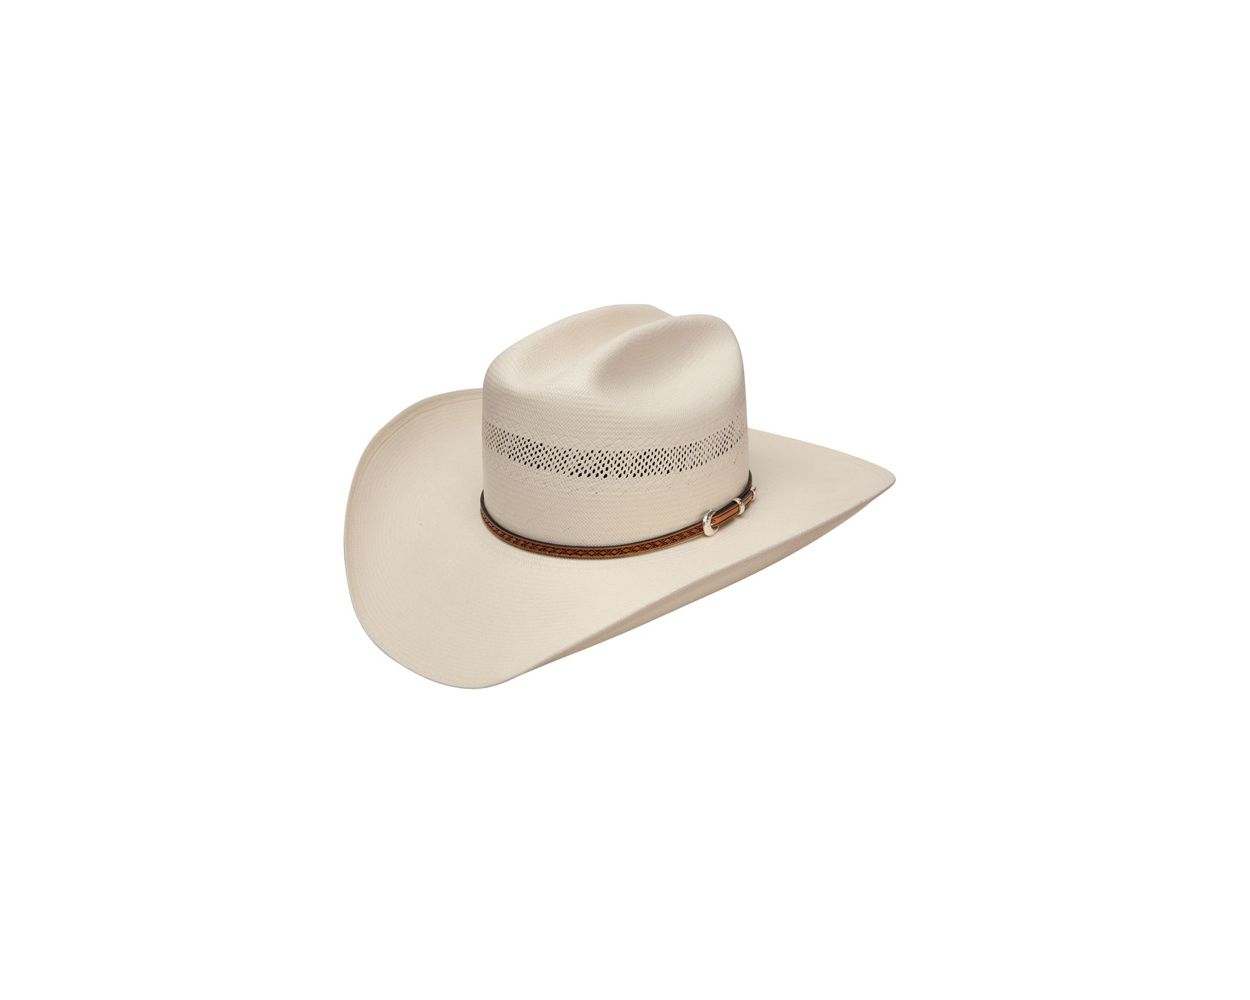 100x straw cowboy hat